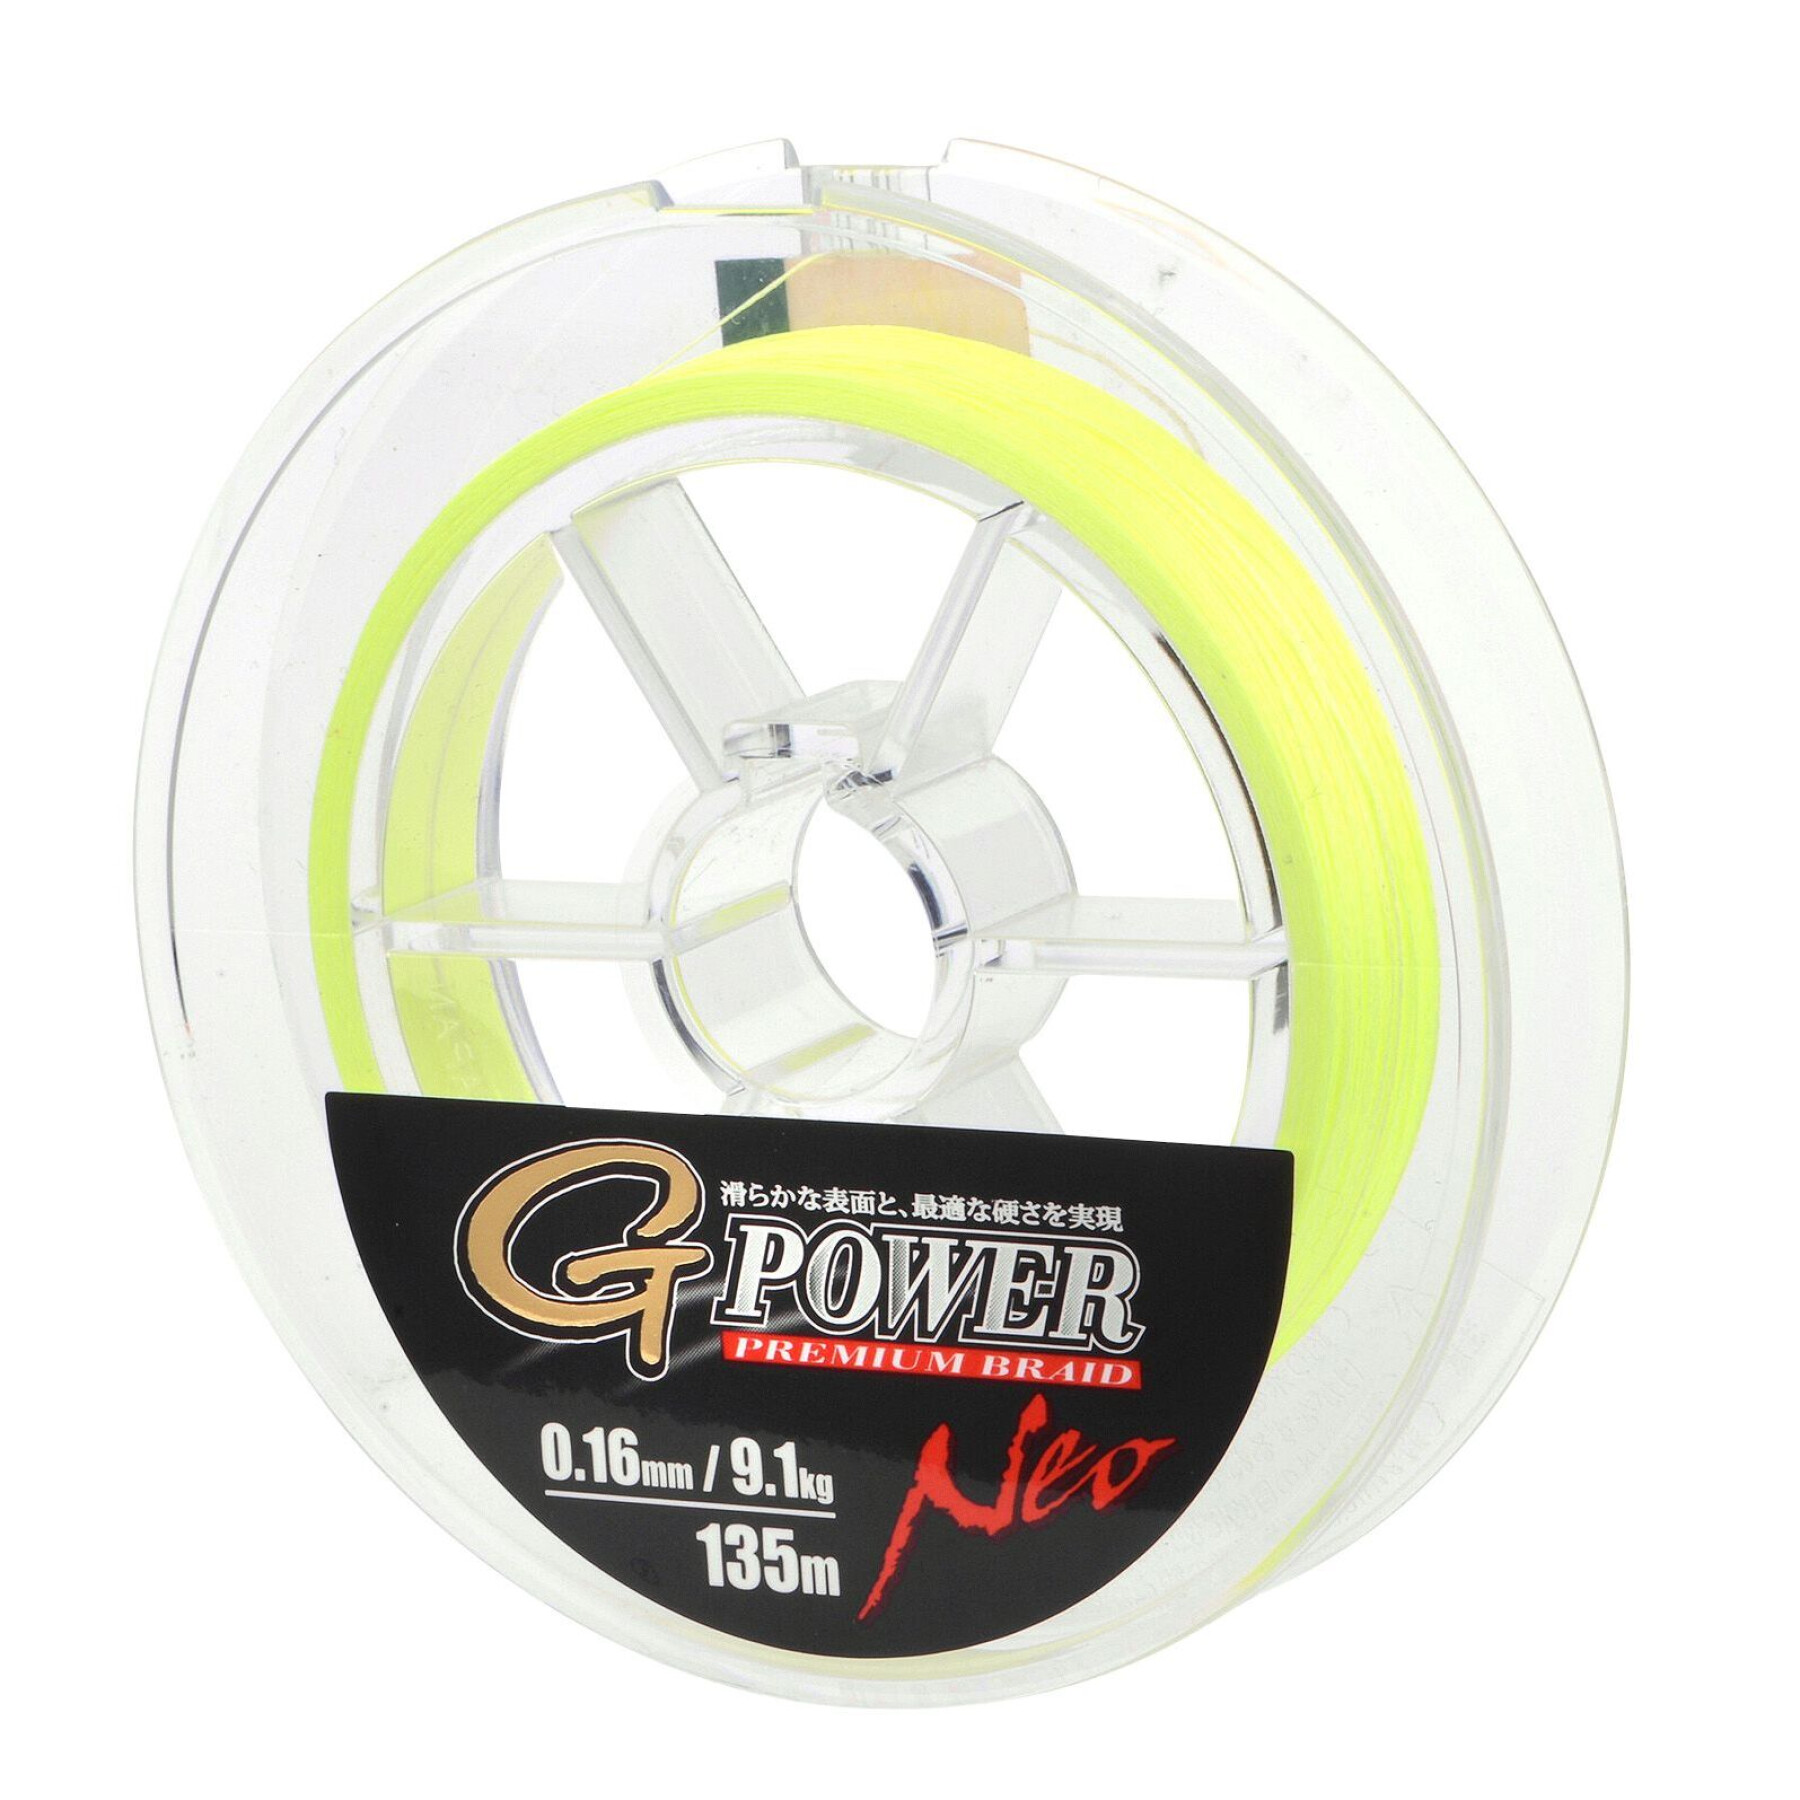 Treccia Gamakatsu G-Power Premium Neo 0,18 mm